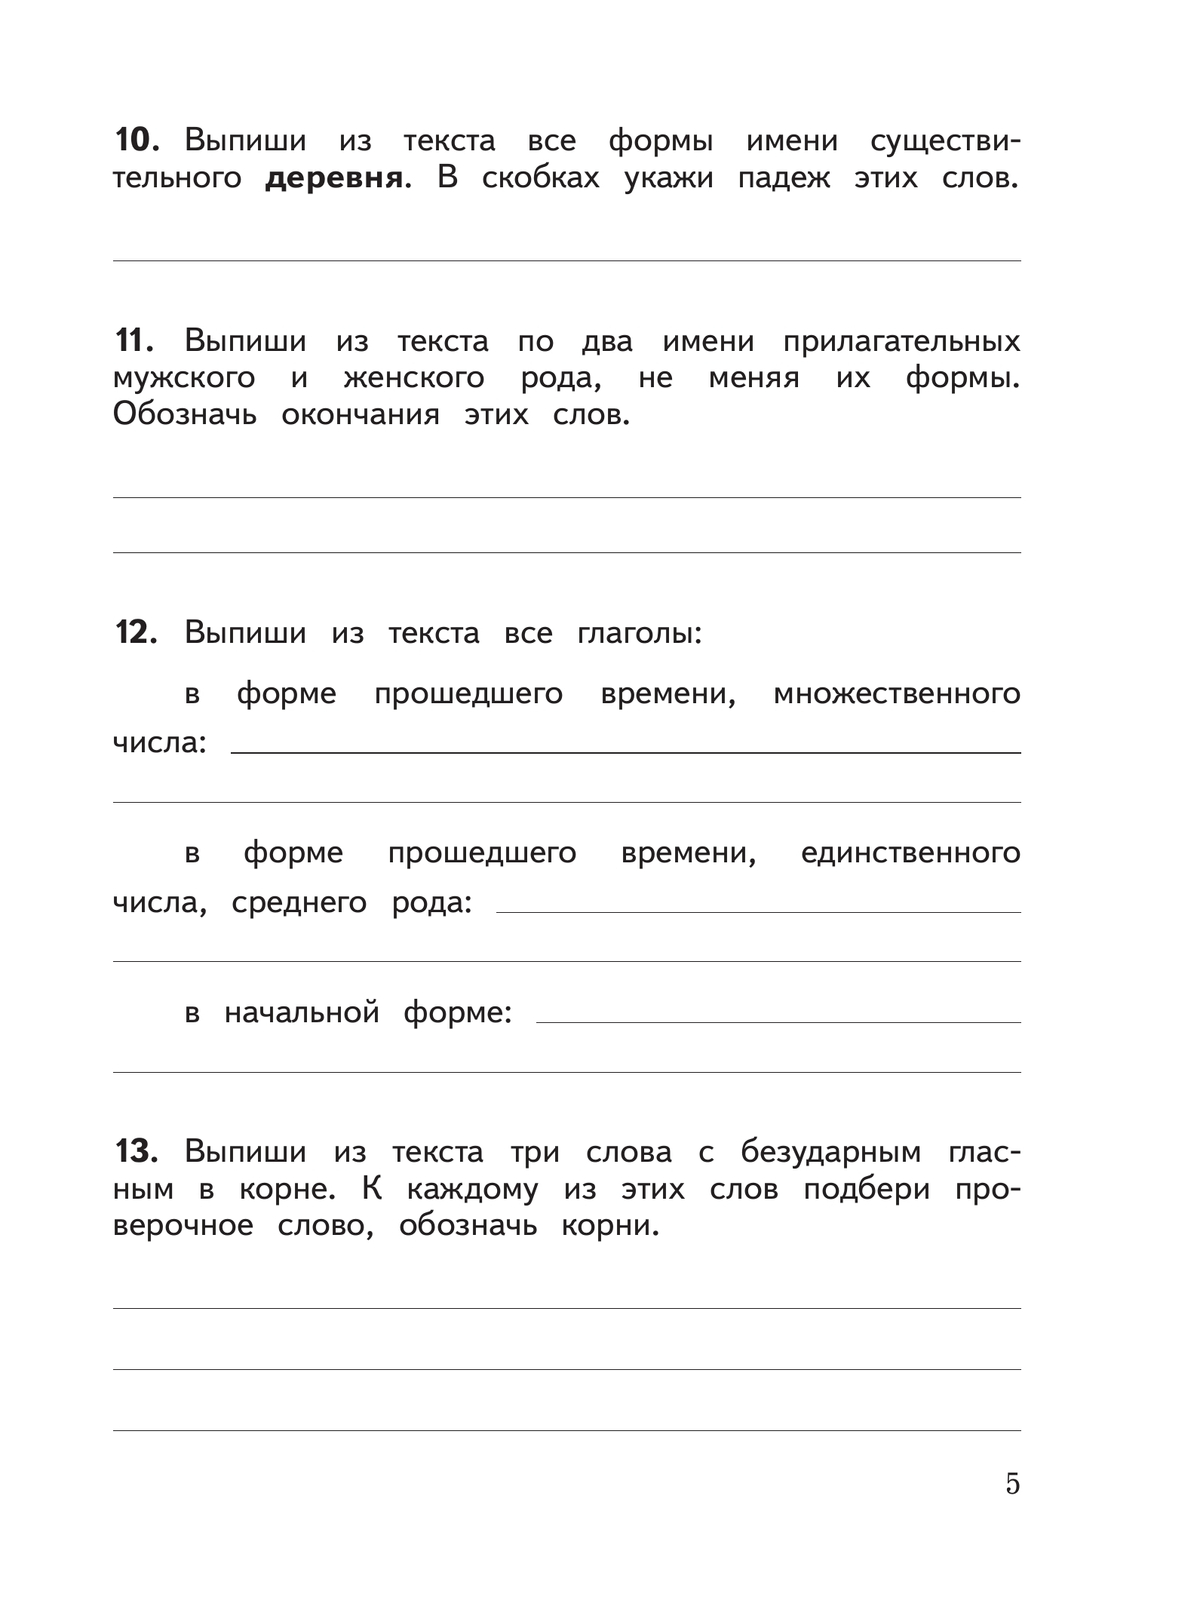 Русский язык: предварительный контроль, текущий контроль, итоговый контроль. 4 класс 7